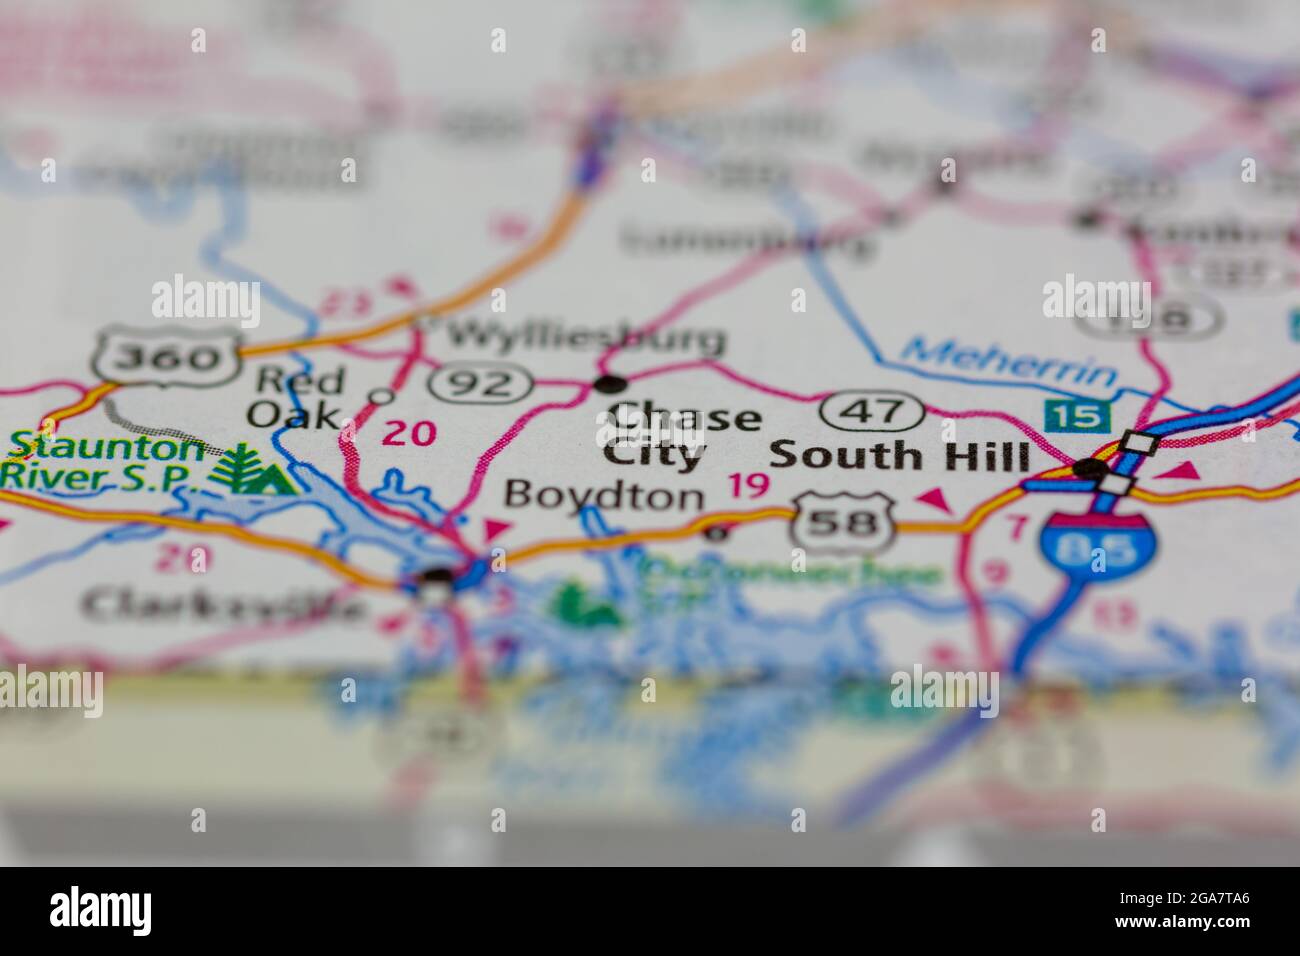 Chase City Virginia wird auf einer Straßenkarte oder Geografie-Karte angezeigt Stockfoto